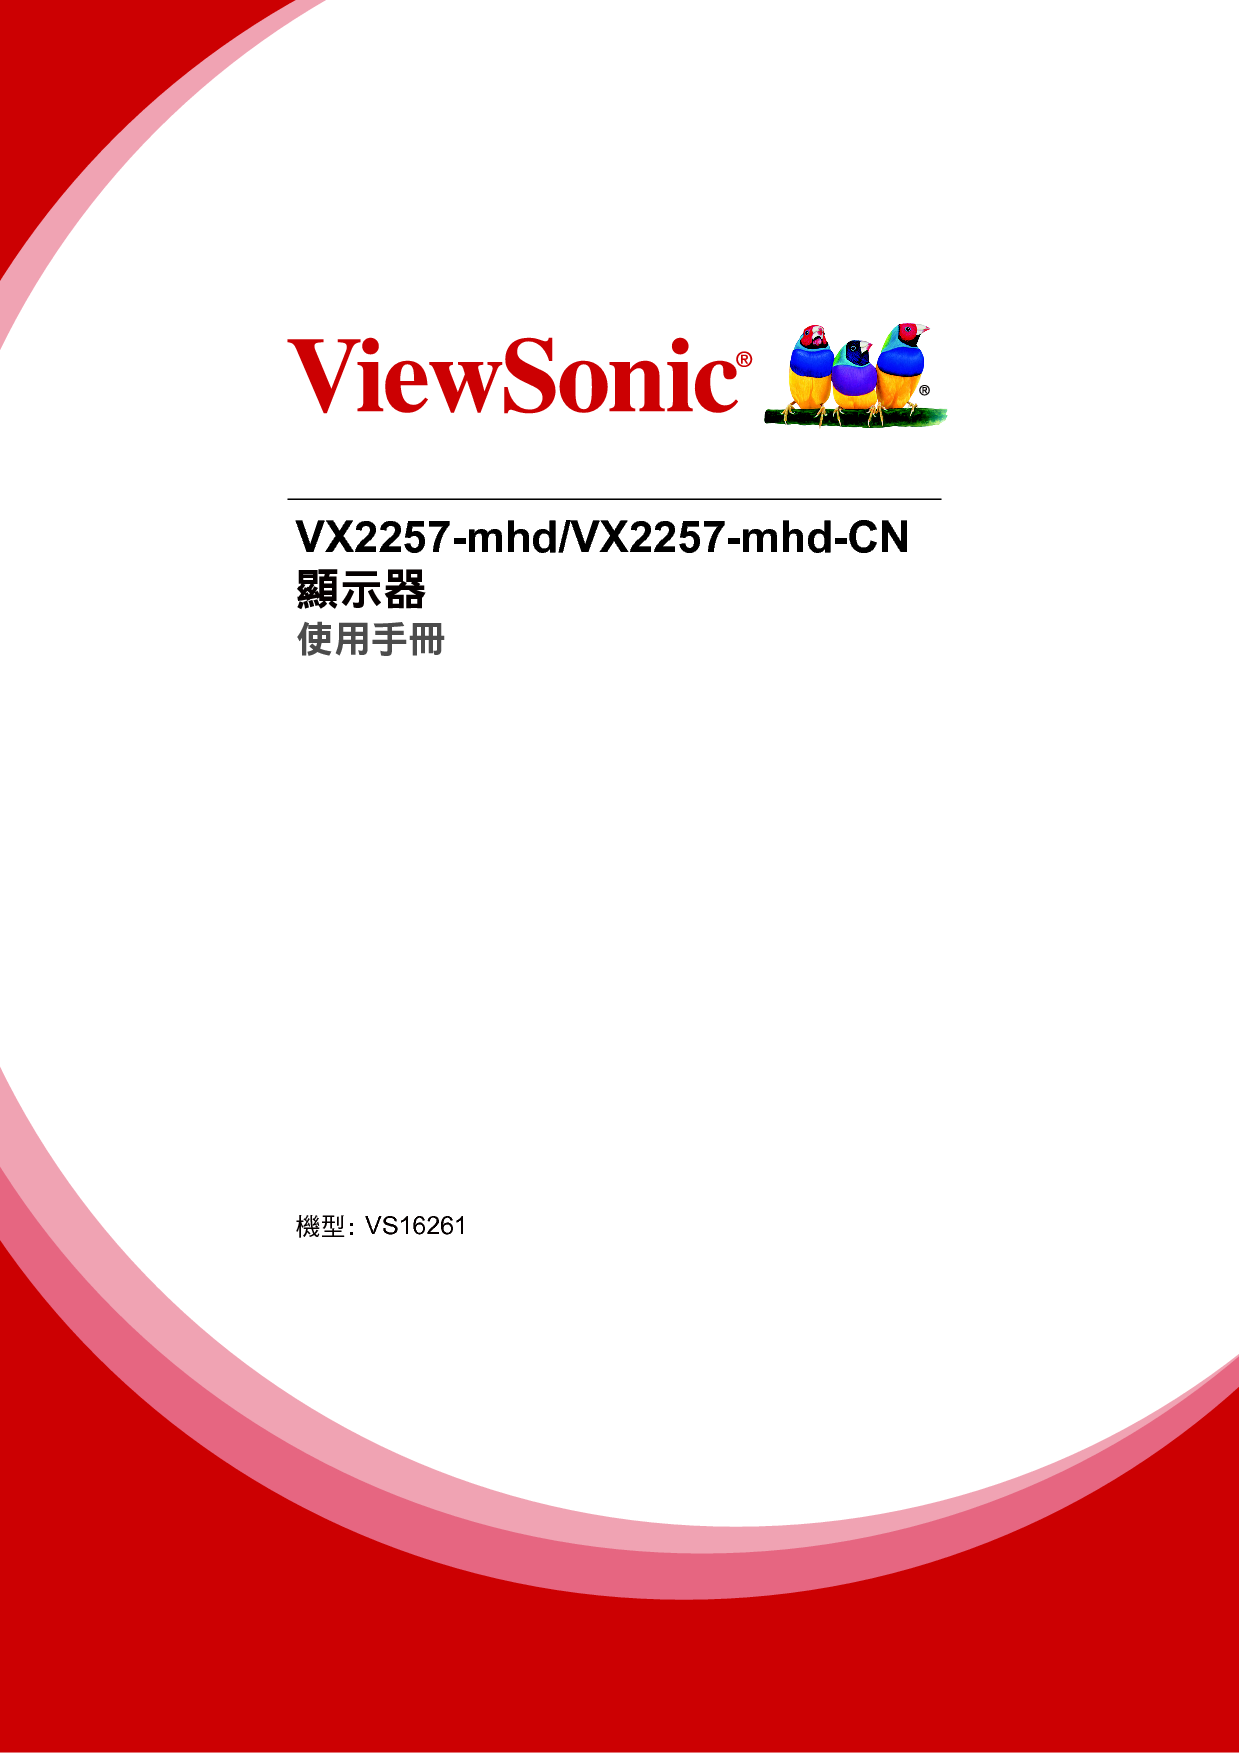 优派 ViewSonic VX2257-mhd 繁体 使用手册 封面